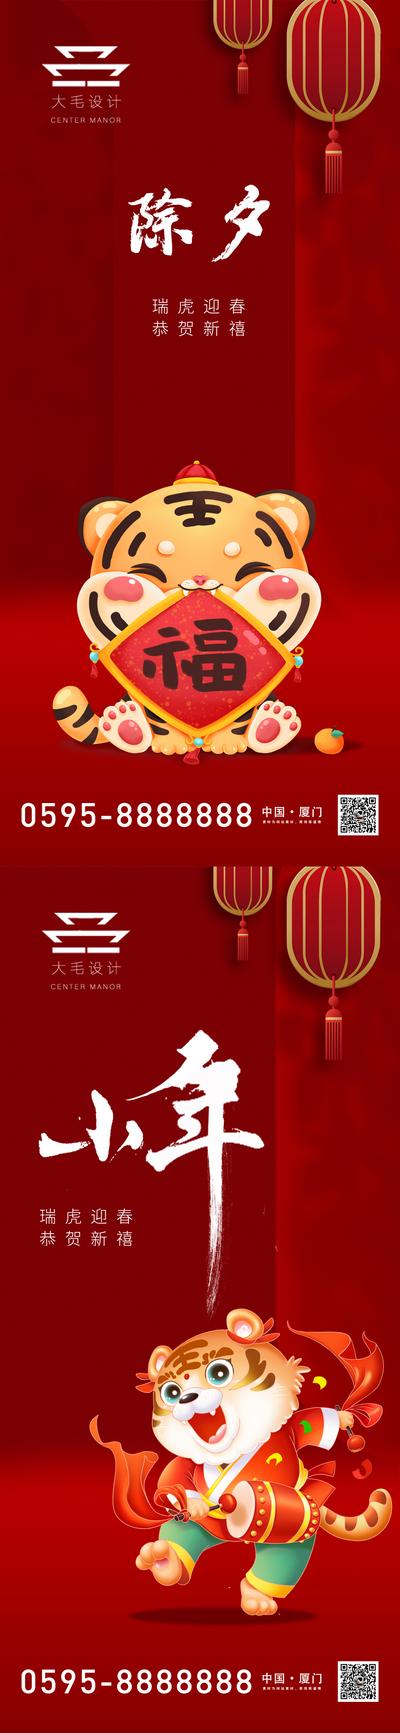 南门网 海报 中国传统节日  除夕 小年 红色 灯笼 虎娃 系列